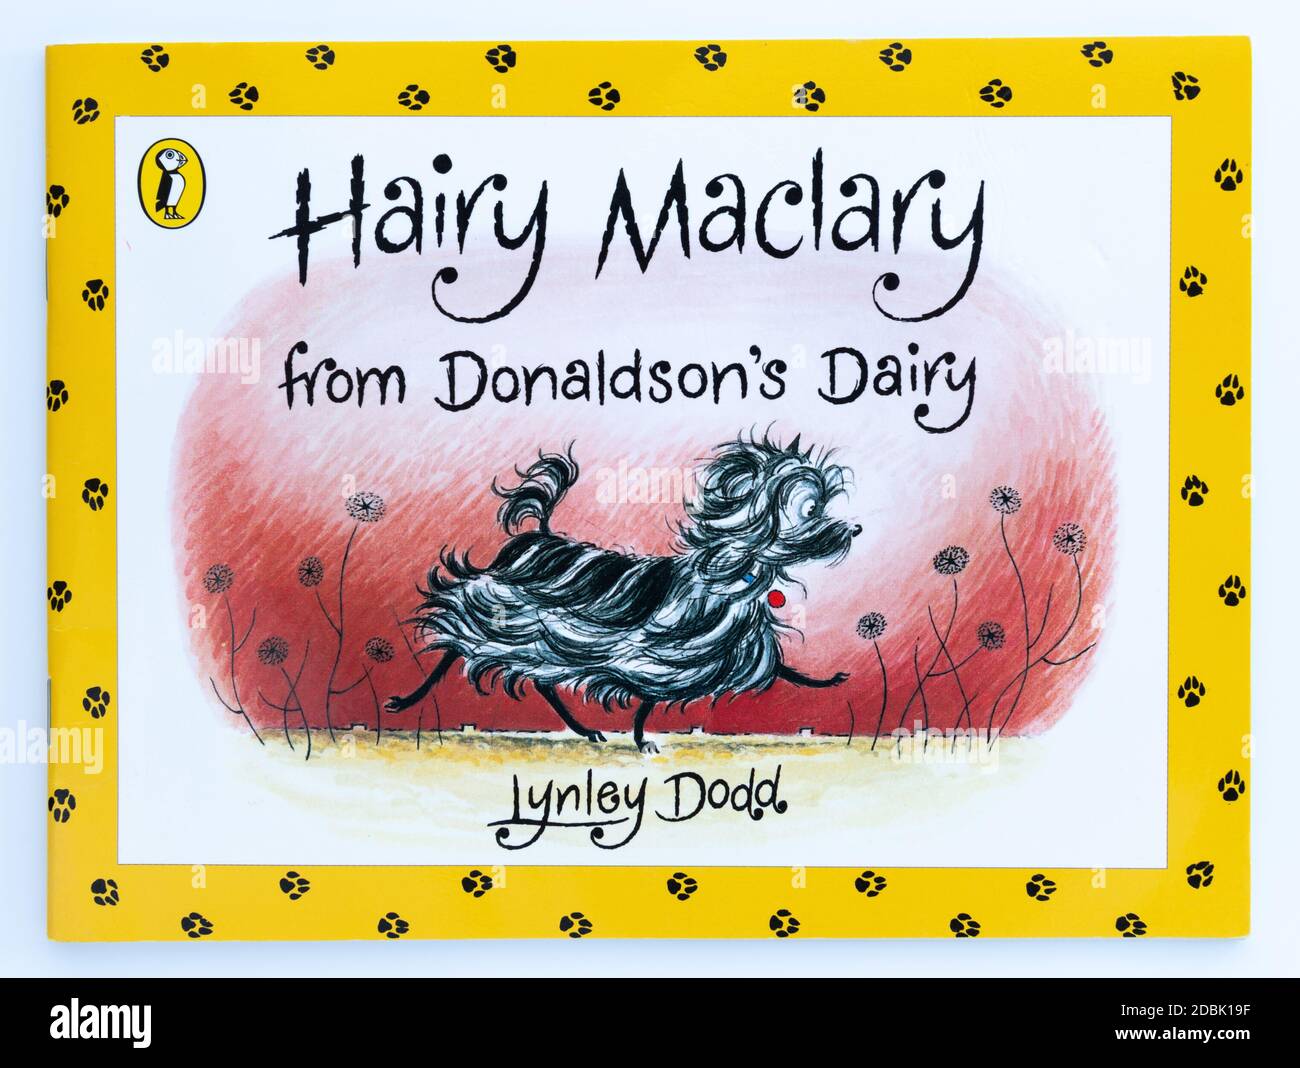 Un cuñoso maclario de Donaldson's Dairy - Lynley Dodd Foto de stock